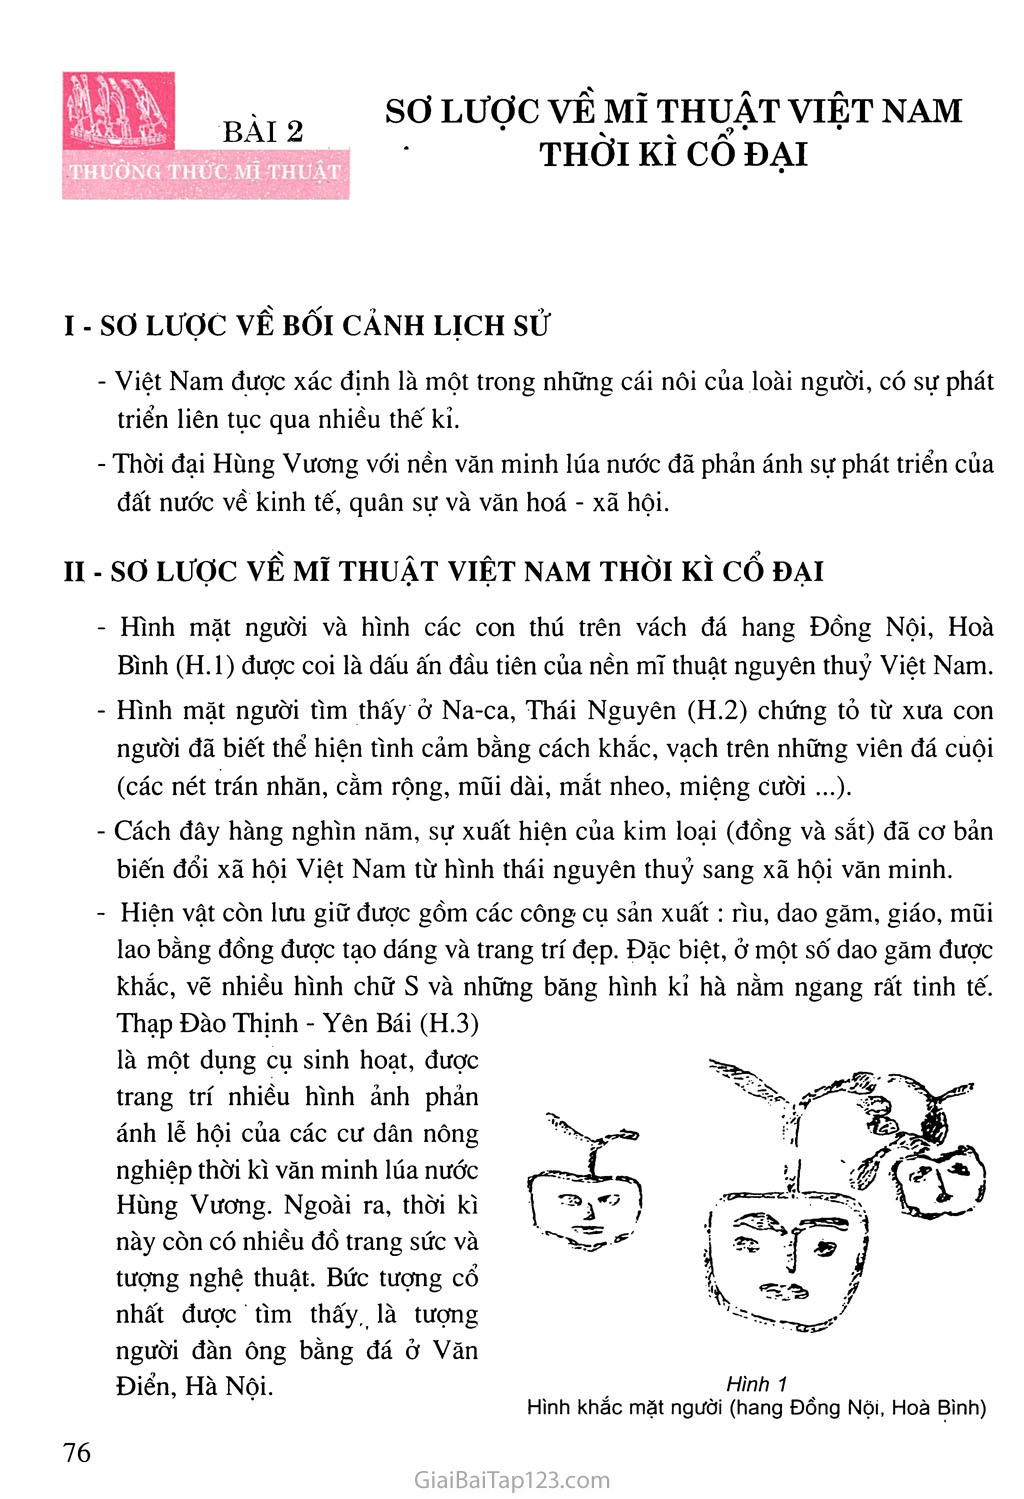 Bài 2. Thường thức mĩ thuật Sơ lược về mĩ thuật Việt Nam thời kì cổ đại trang 1